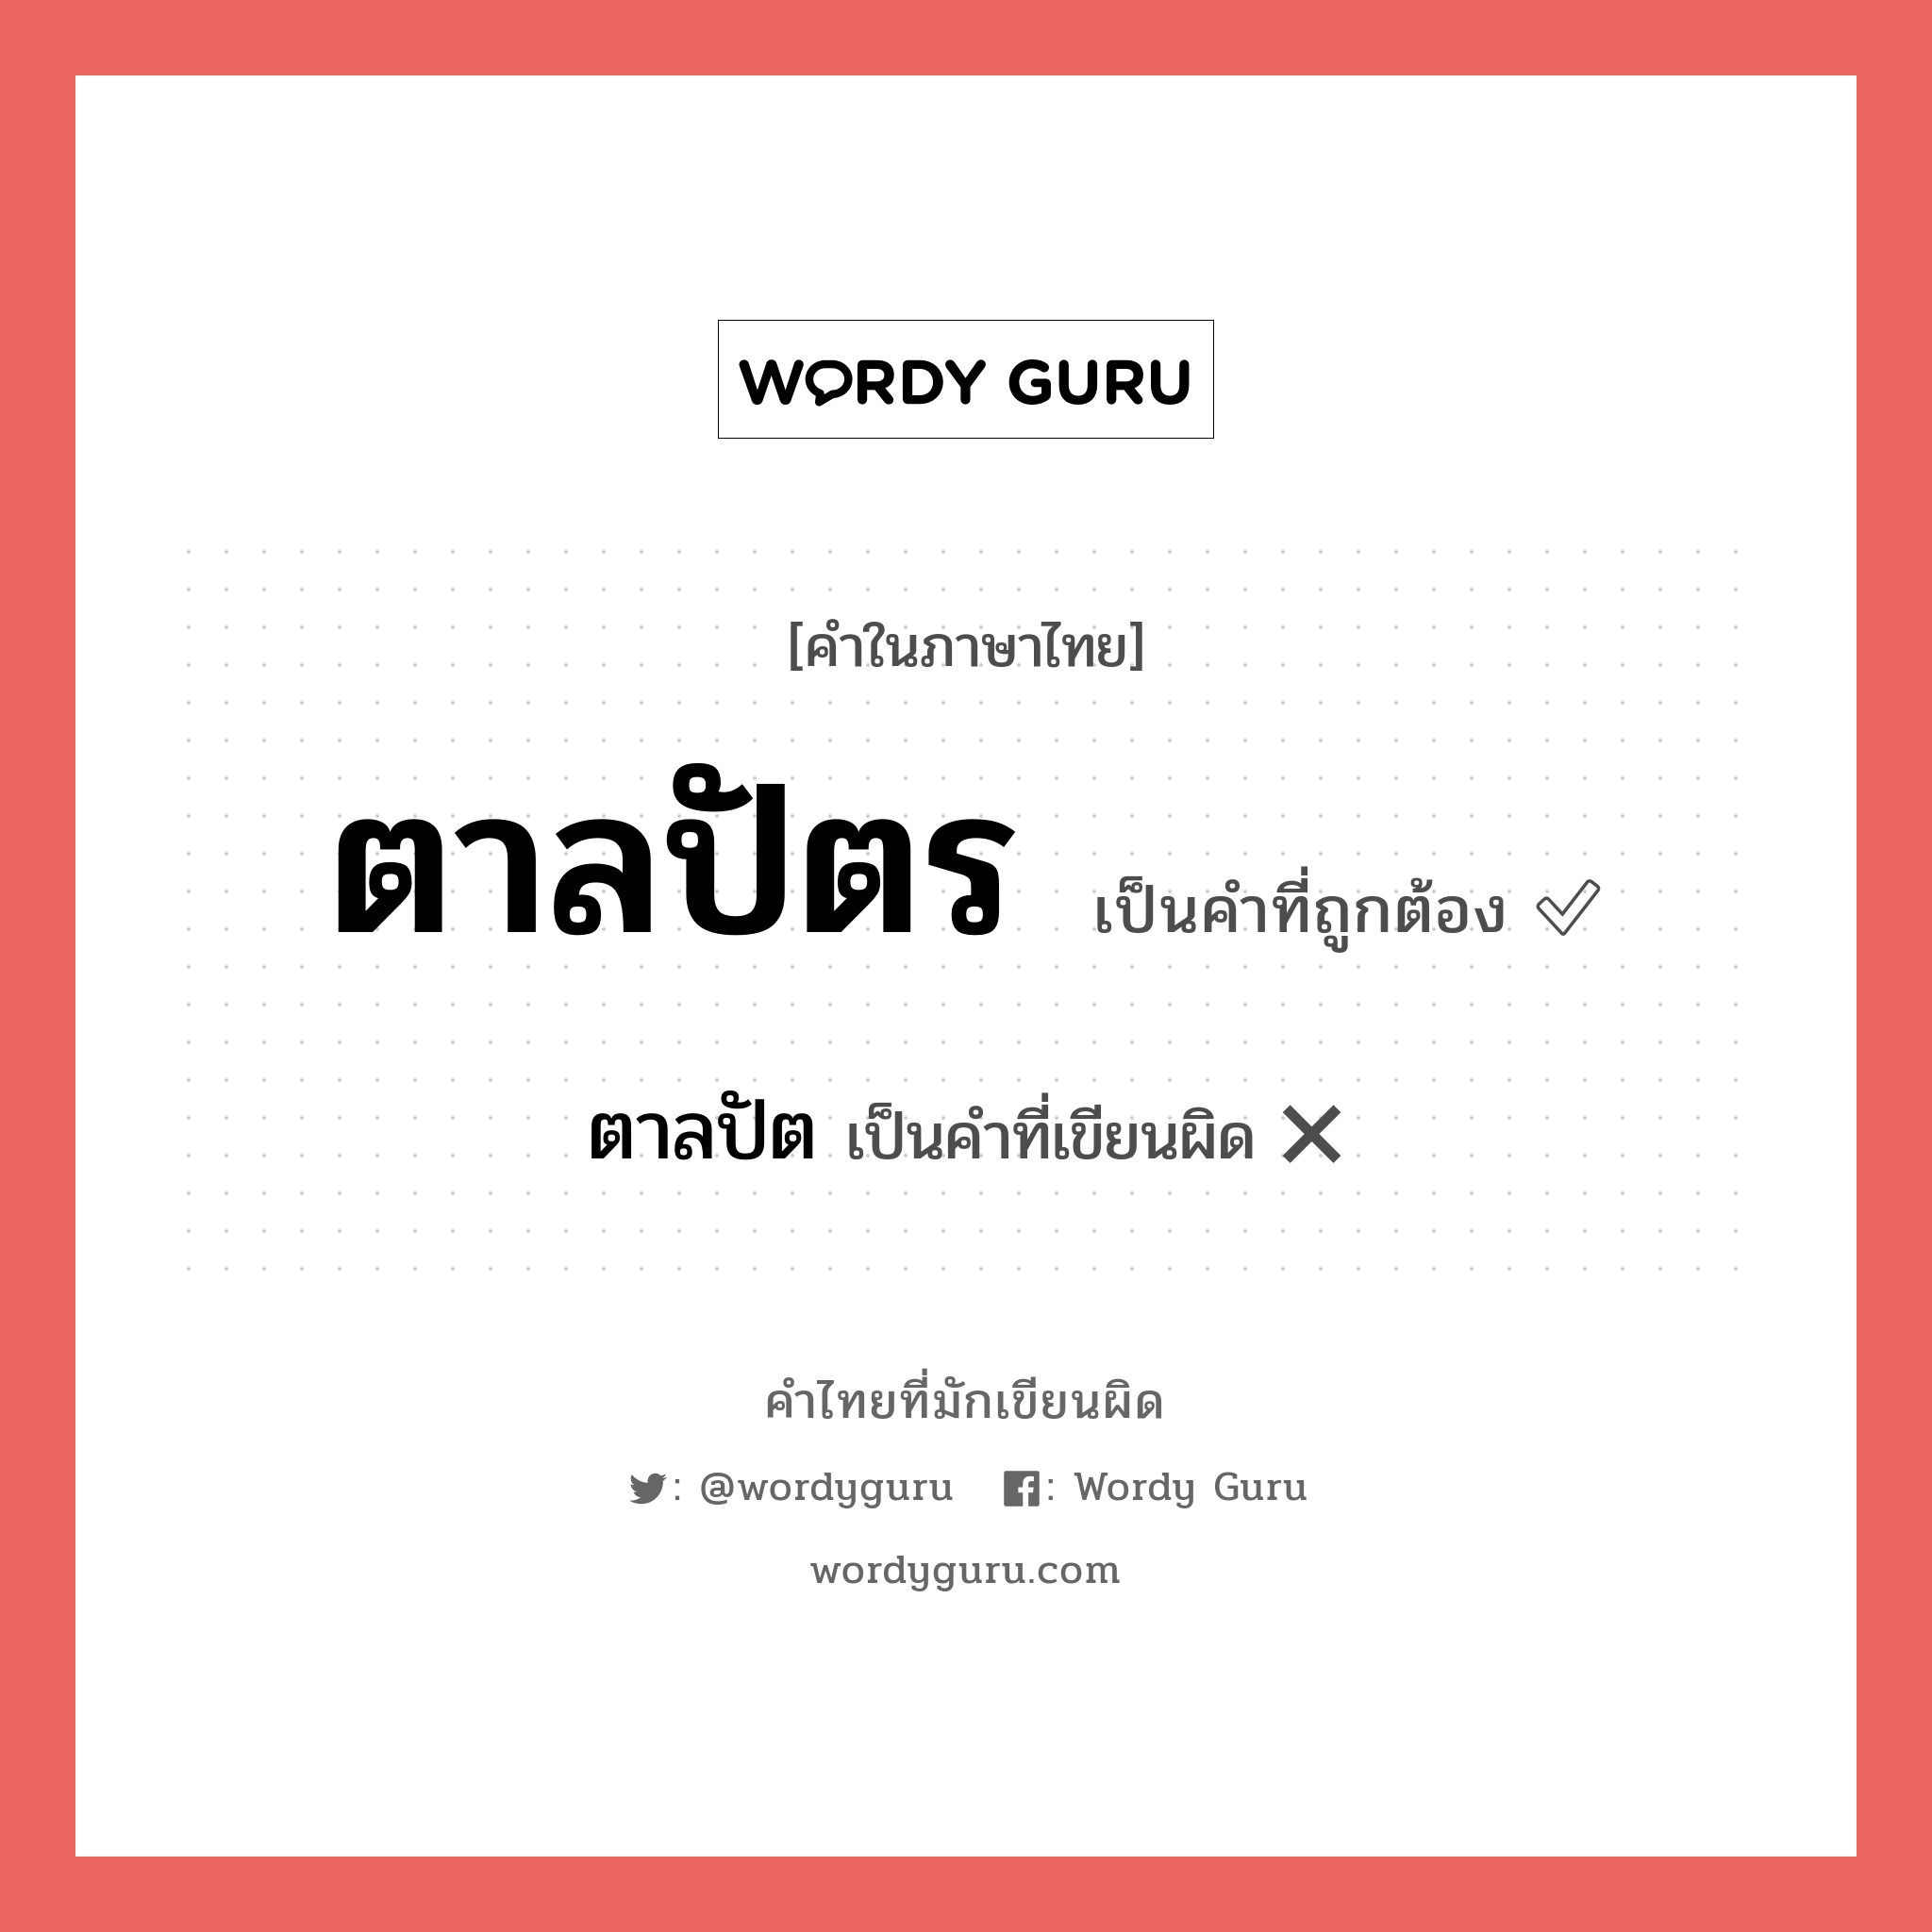 ตาลปัตร หรือ ตาลปัต คำไหนเขียนถูก?, คำในภาษาไทยที่มักเขียนผิด ตาลปัตร คำที่ผิด ❌ ตาลปัต